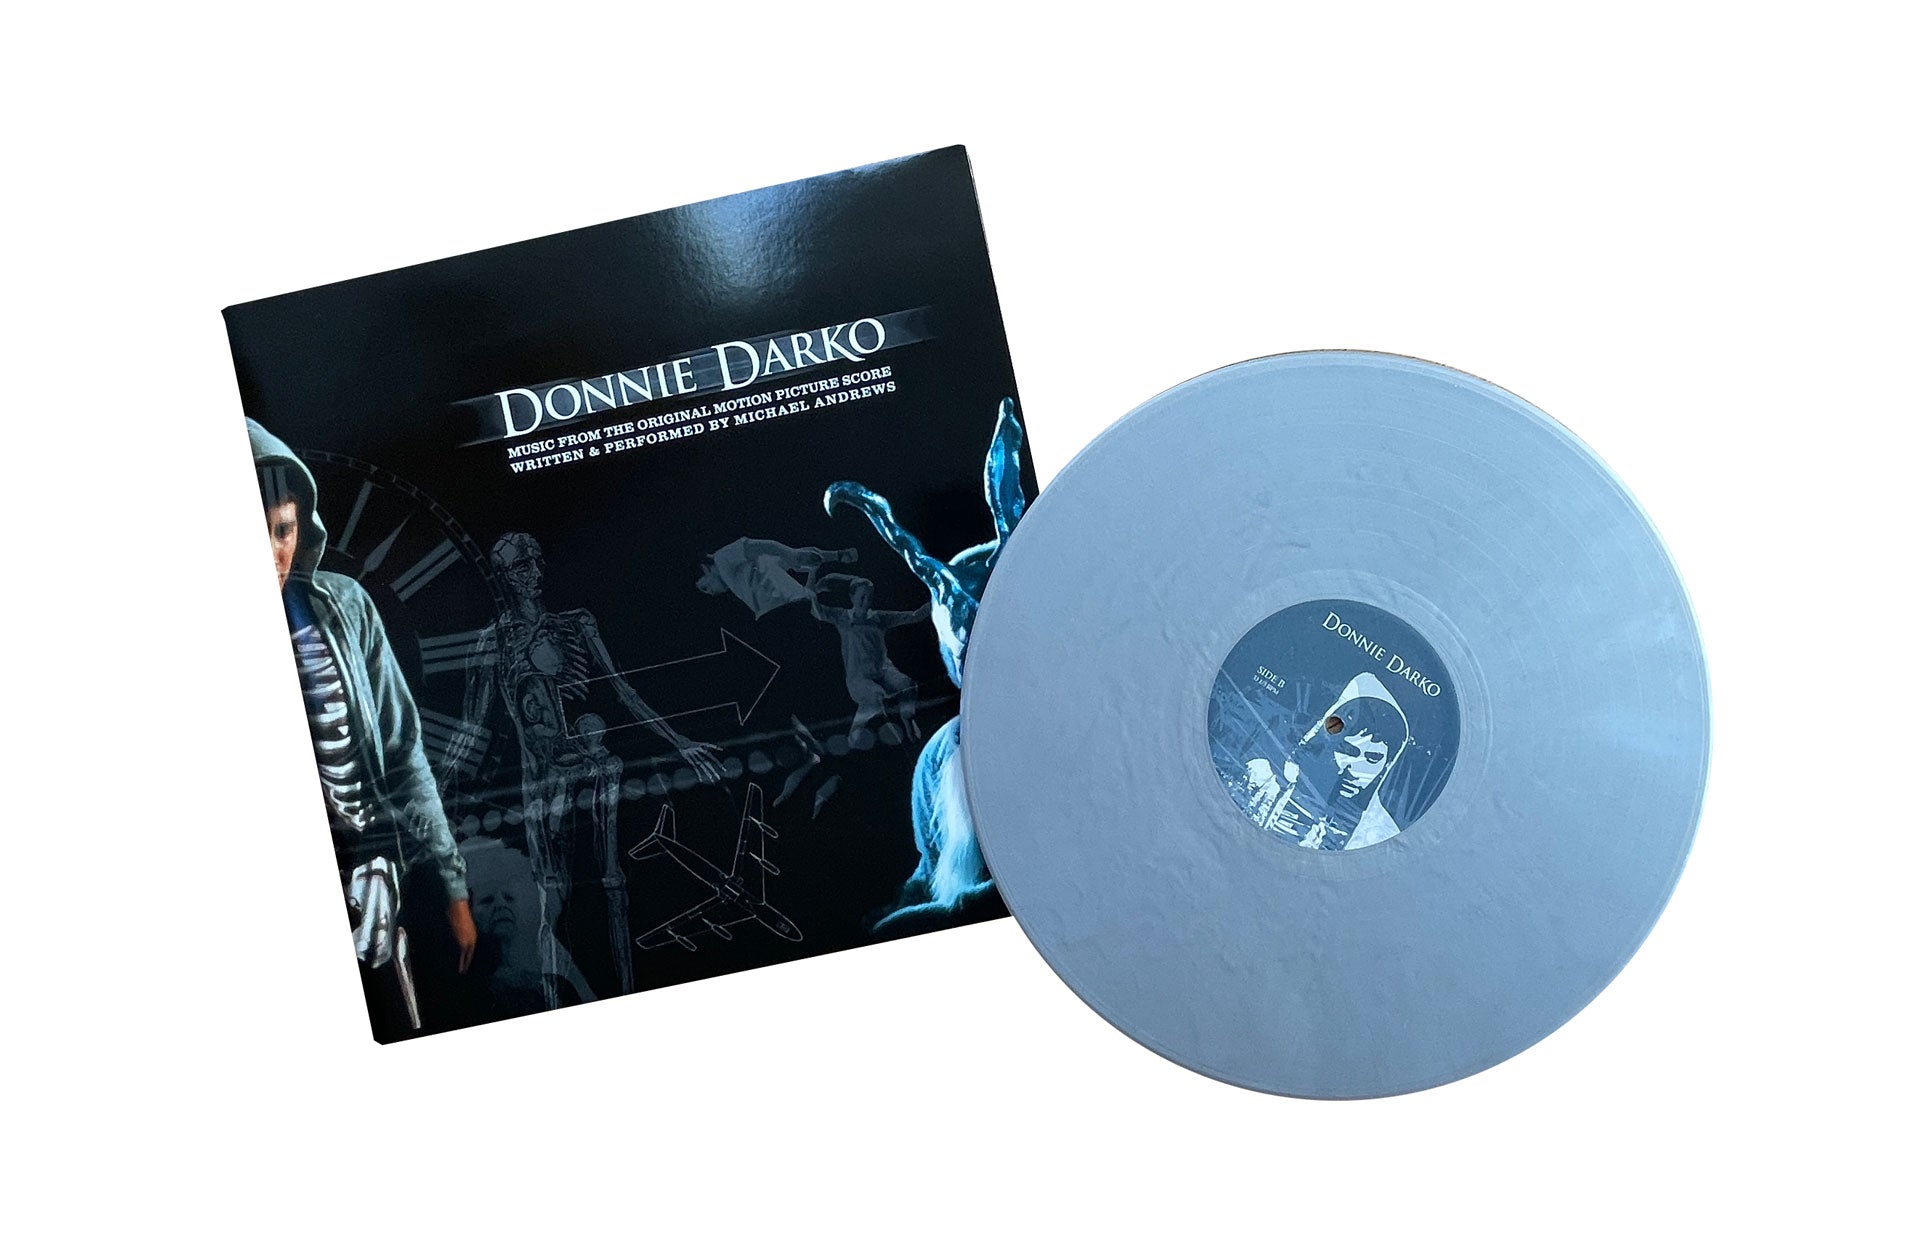 Donnie Darko - Original Score by Michael Andrews